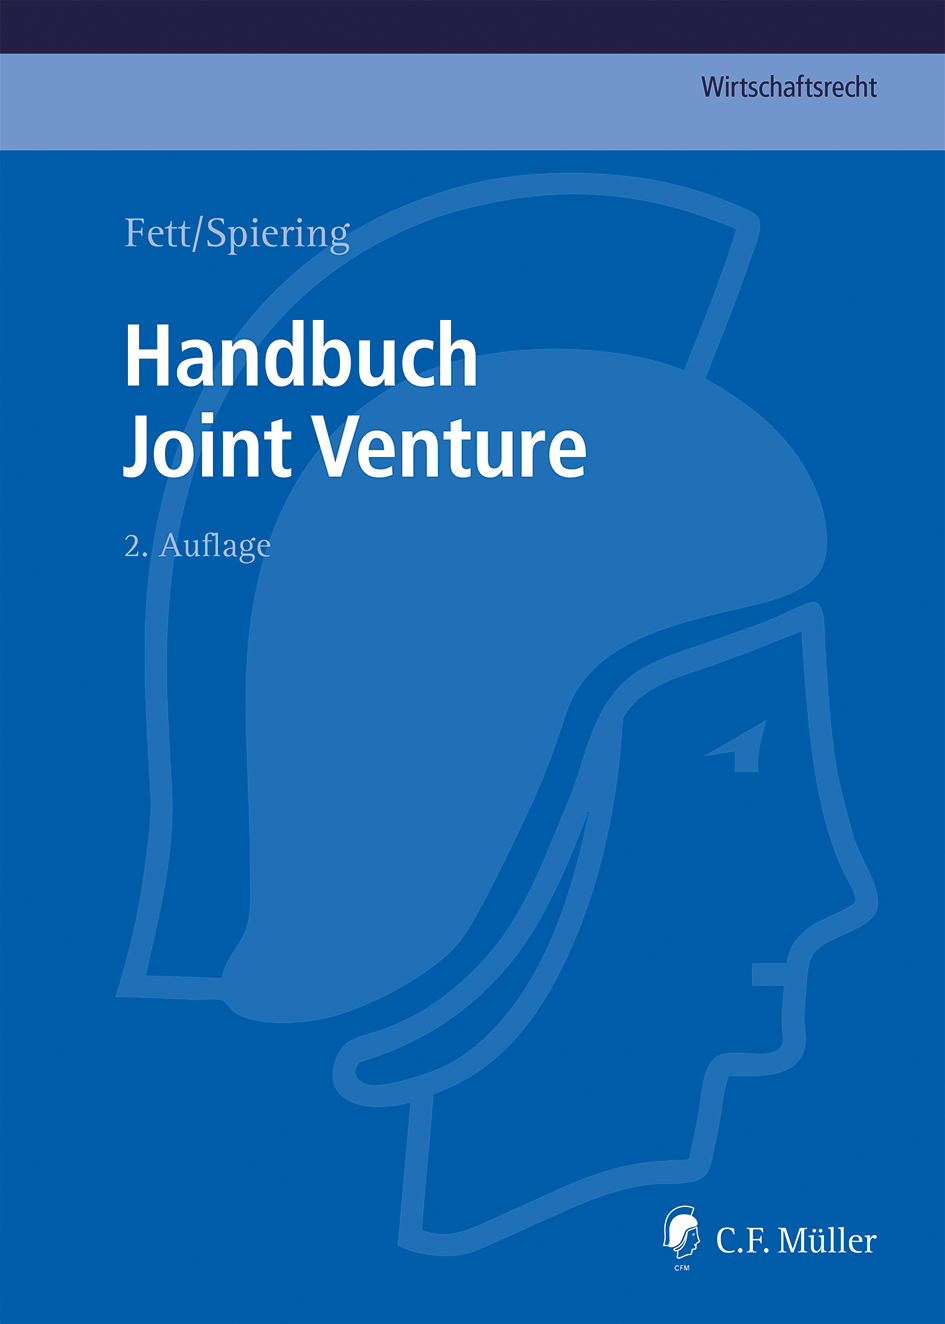 Abbildung: Handbuch Joint Venture 